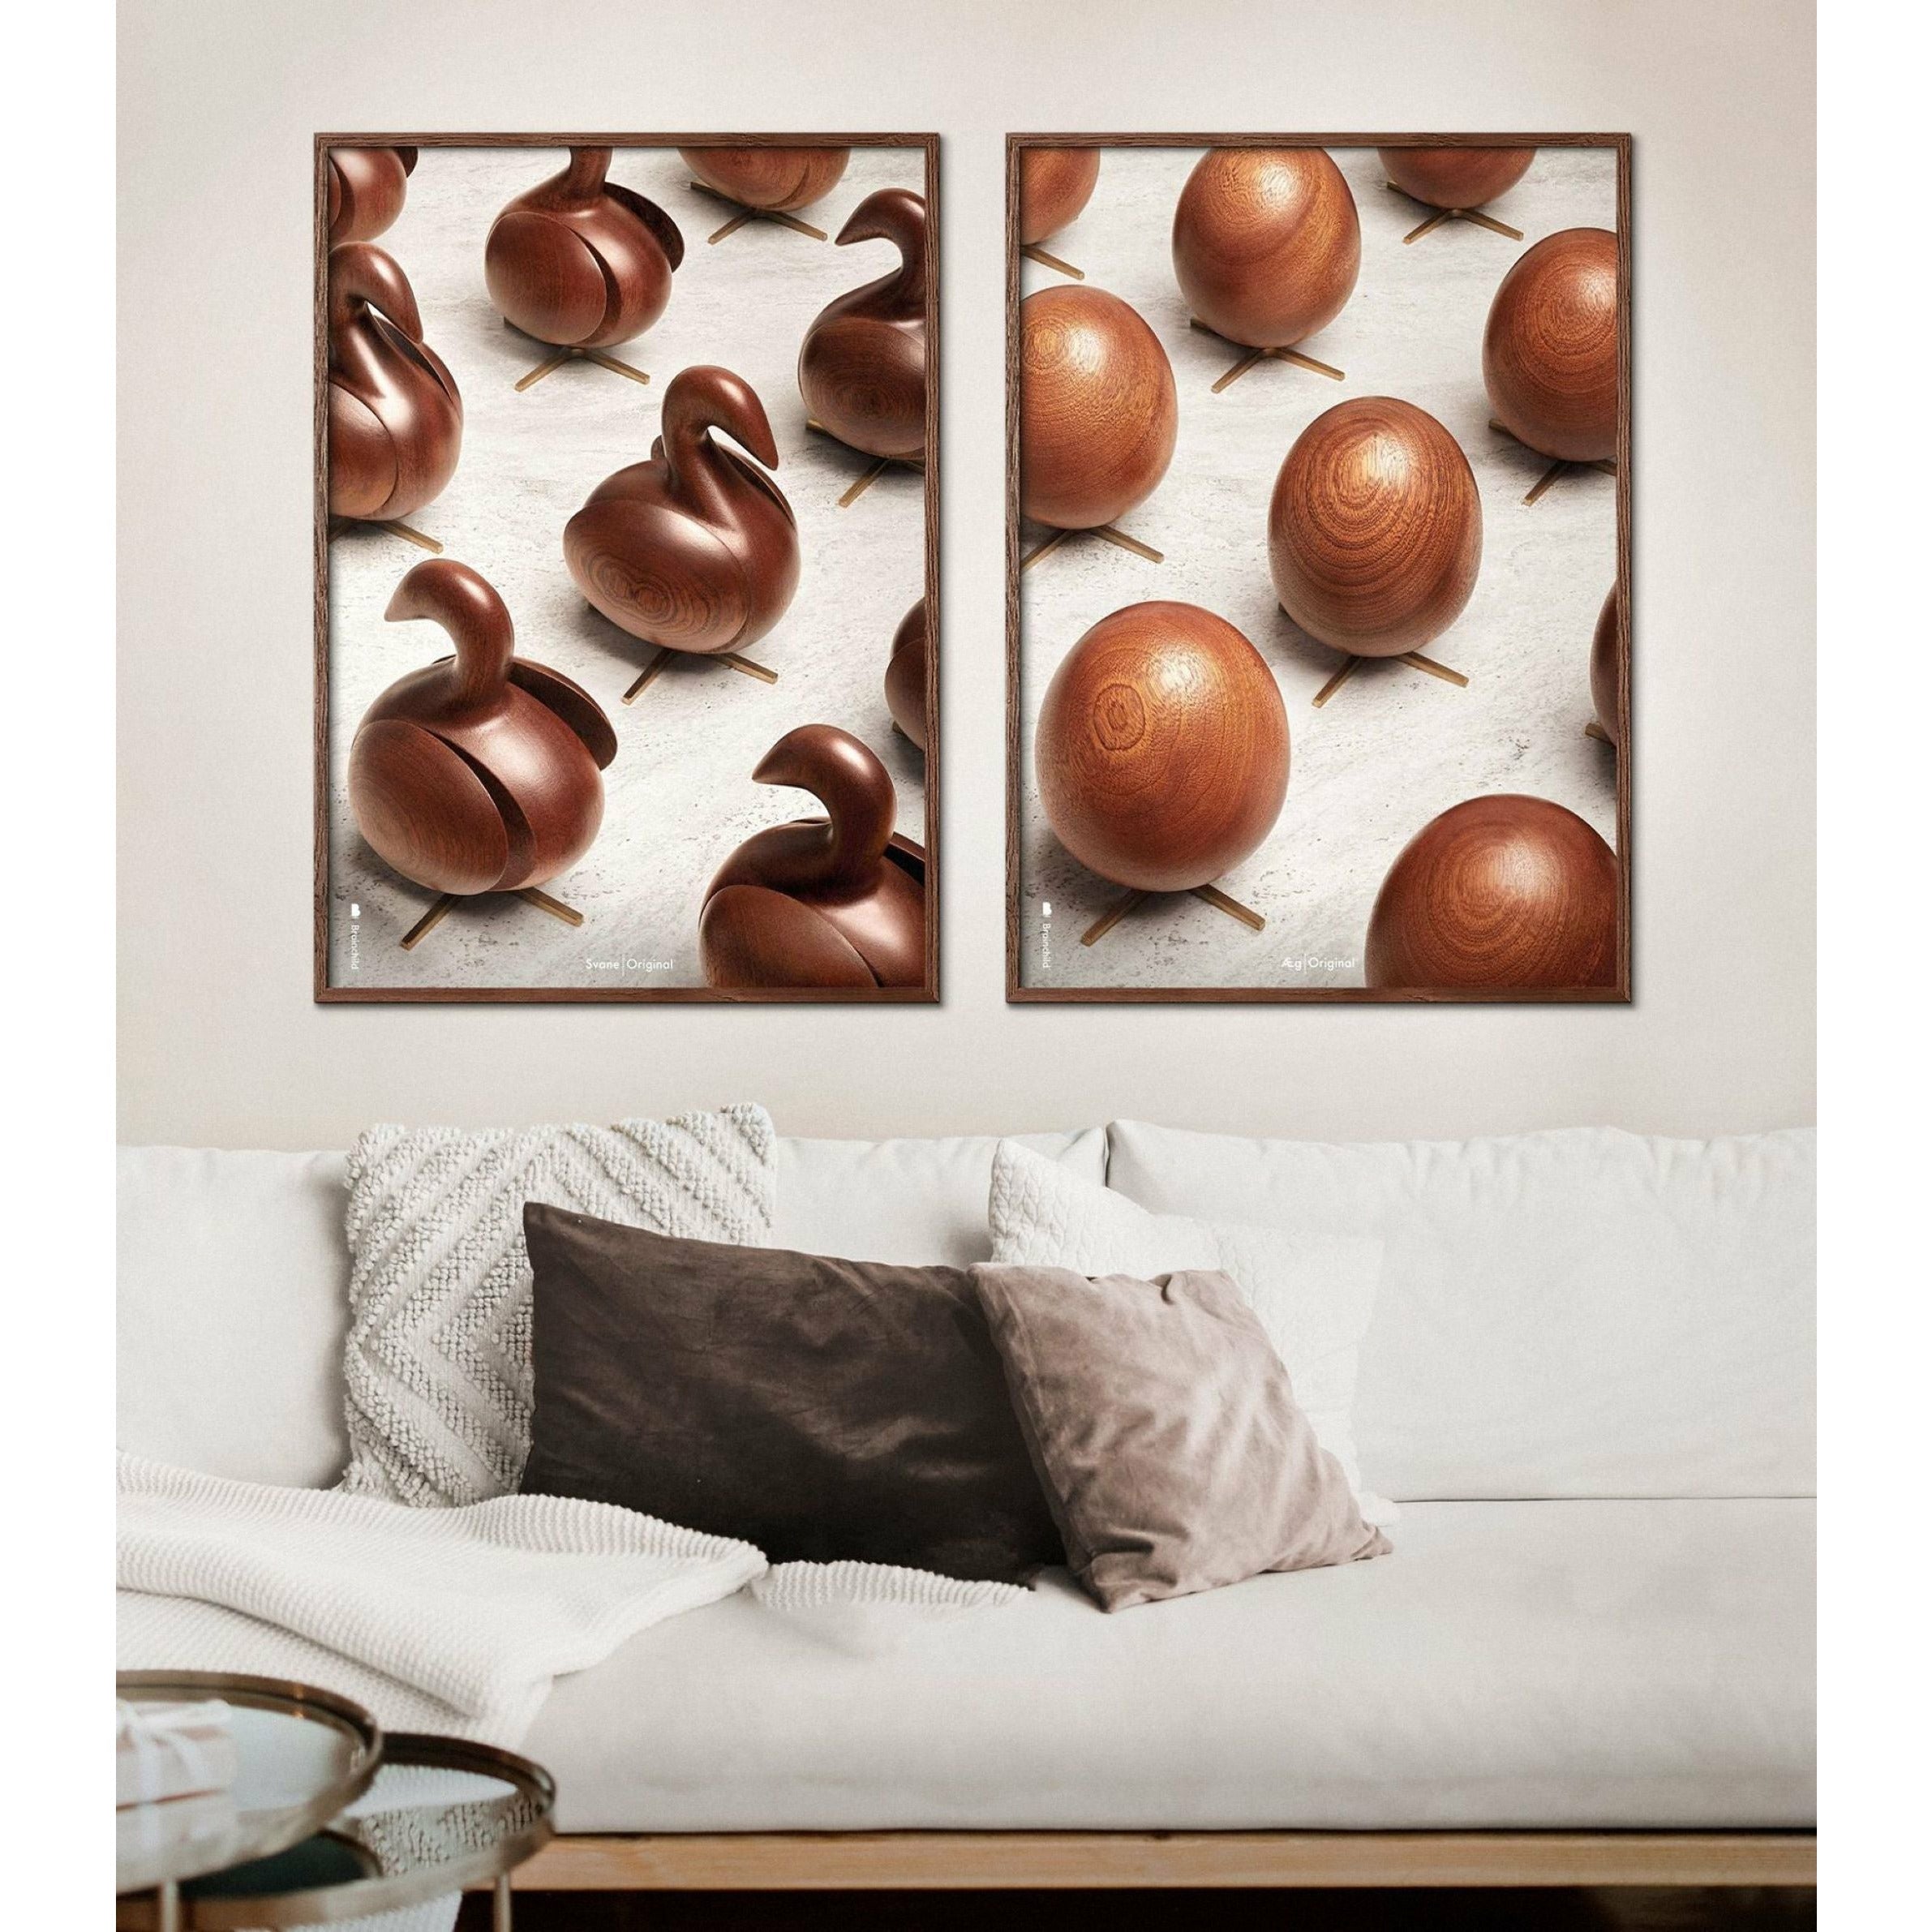 Póster de desfile de huevos de creación, marco hecho de madera oscura, 50x70 cm